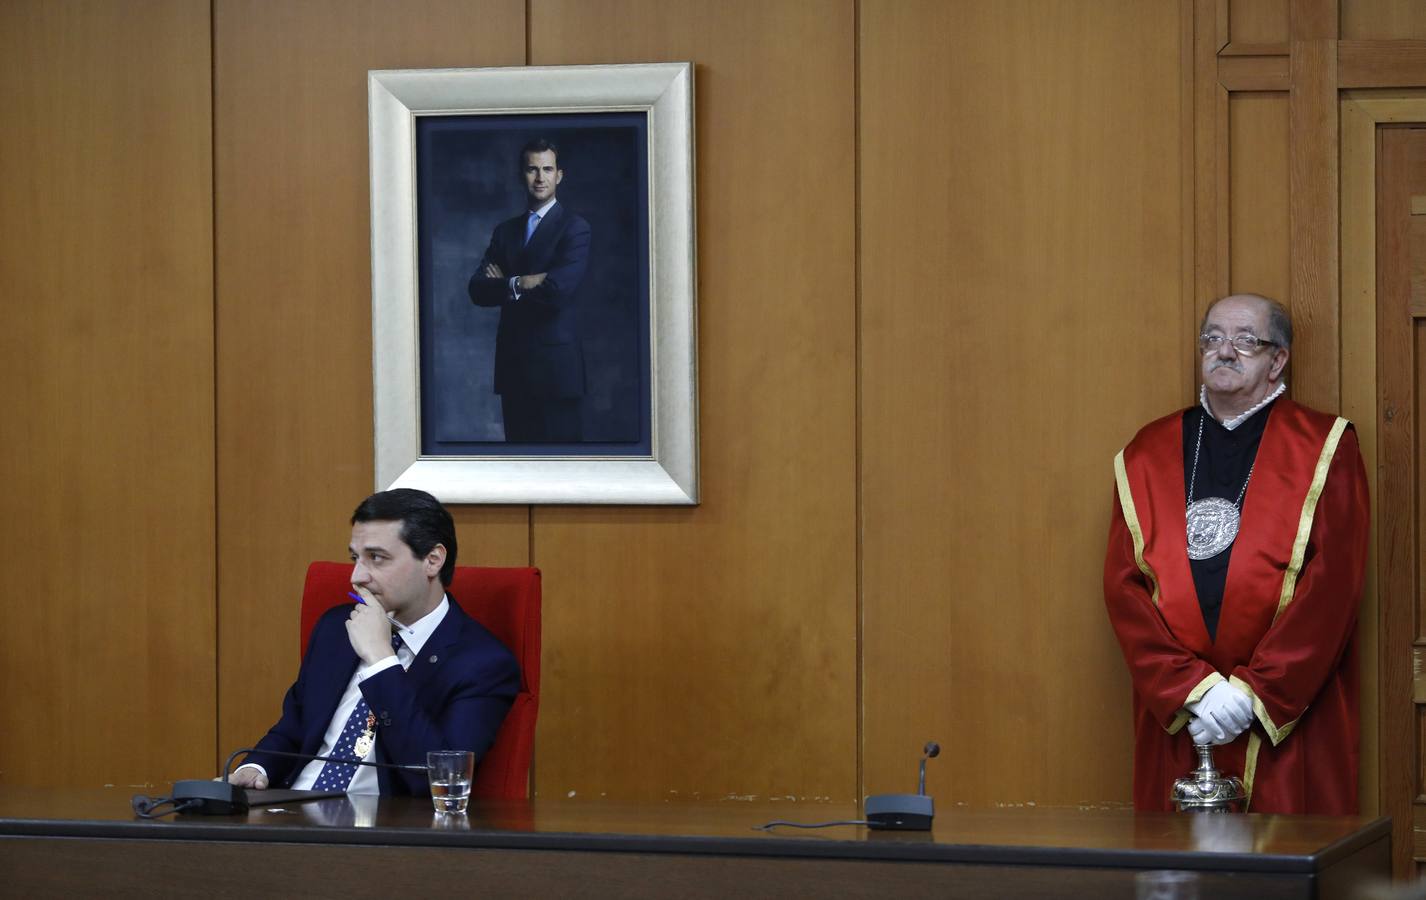 El Pleno de investidura del alcalde de Córdoba, José María Bellido, en imágenes